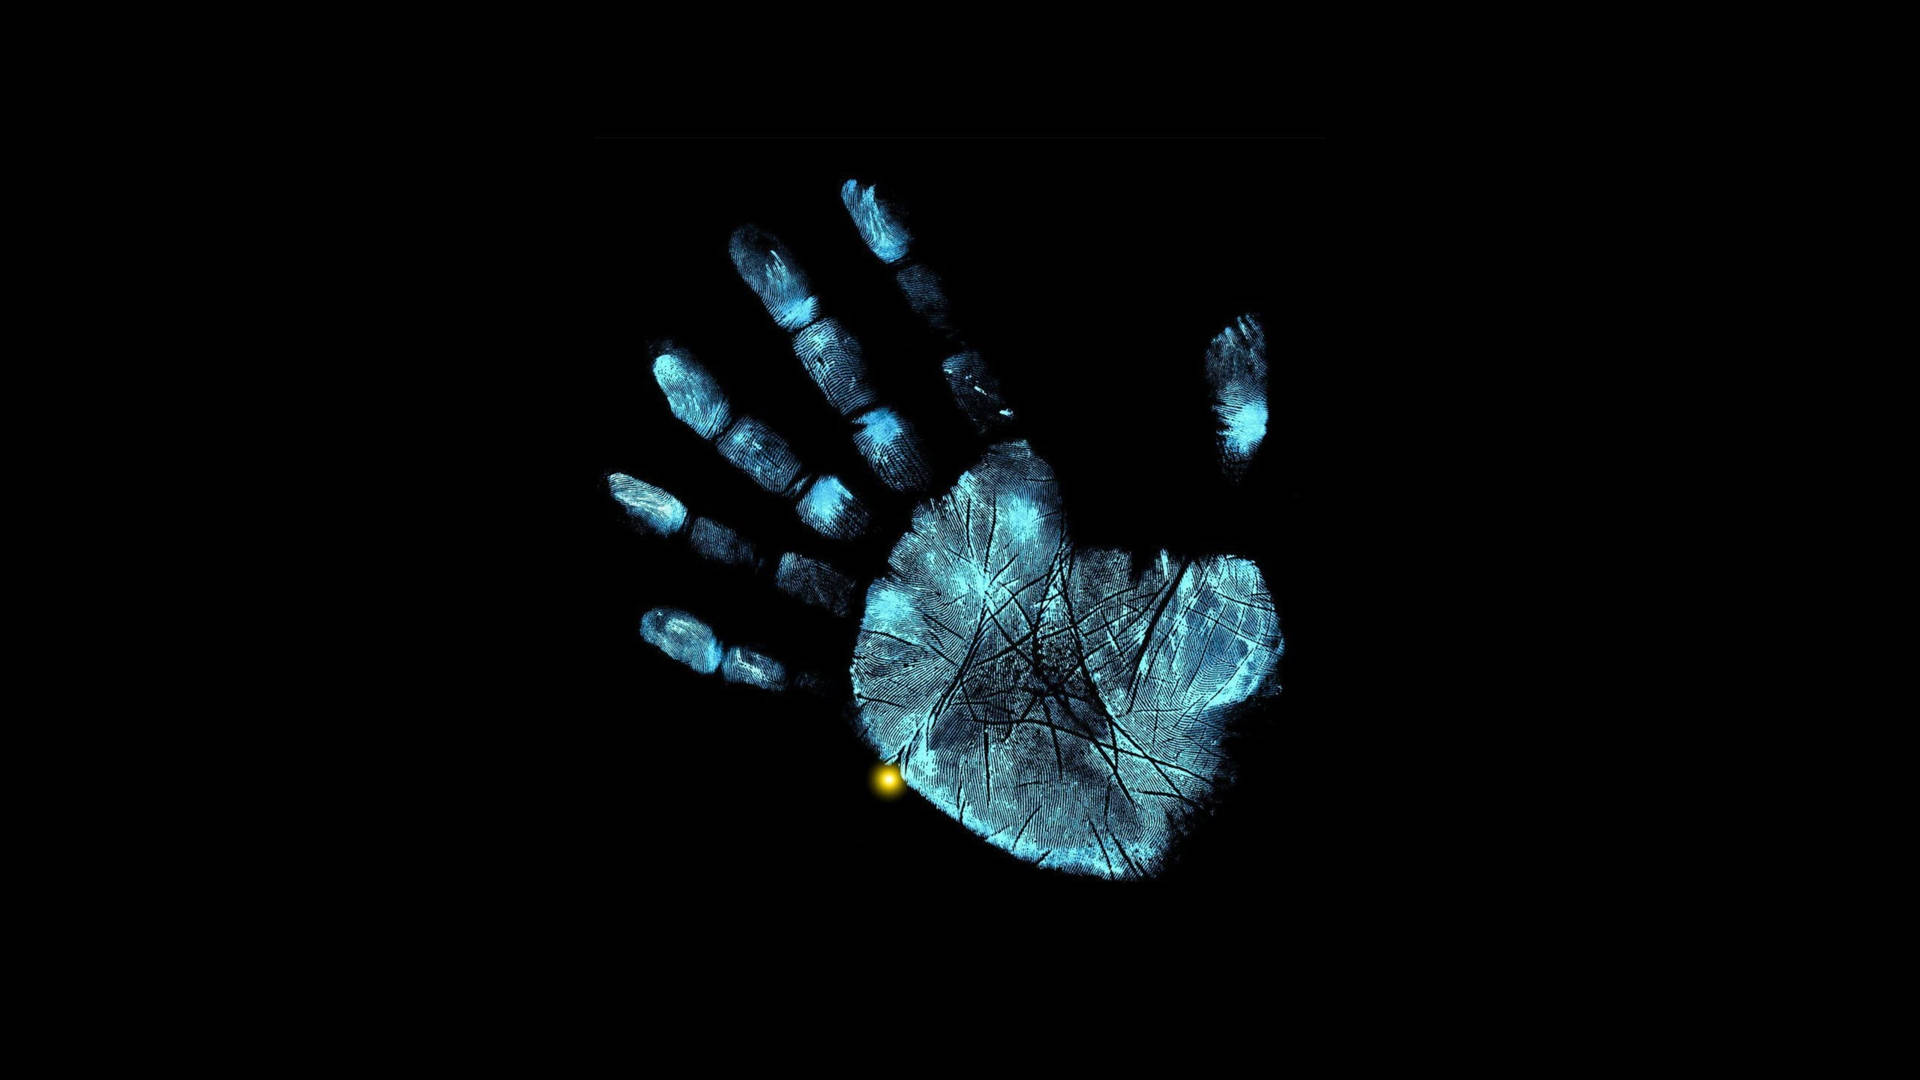 Fundode Tela Amoled De Impressão De Mão Em 4k. Papel de Parede